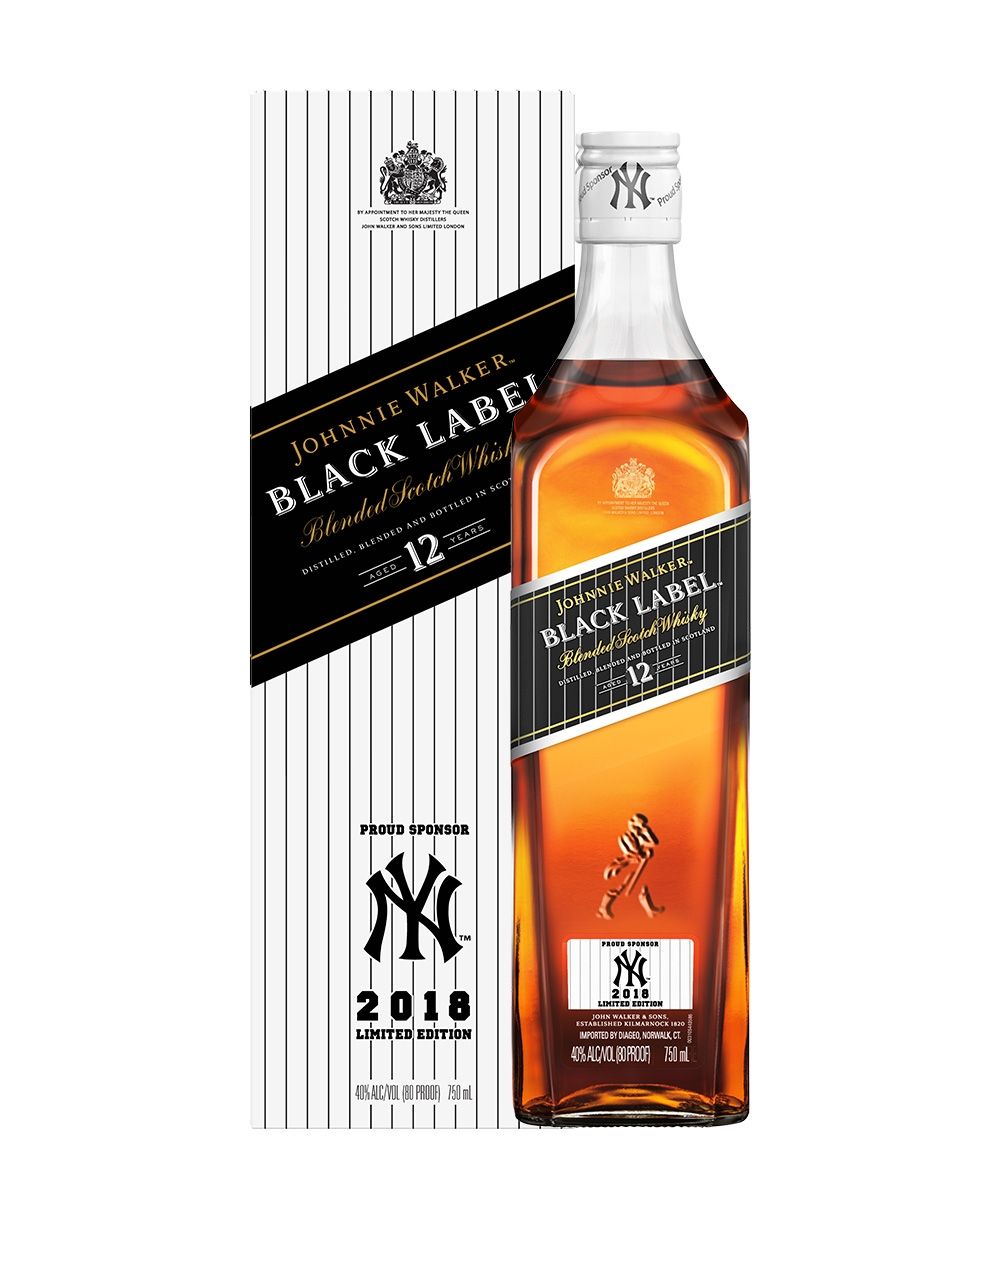 Limited 2018 Johnnie Yankees | ReserveBar Walker Label Design Black Edition -